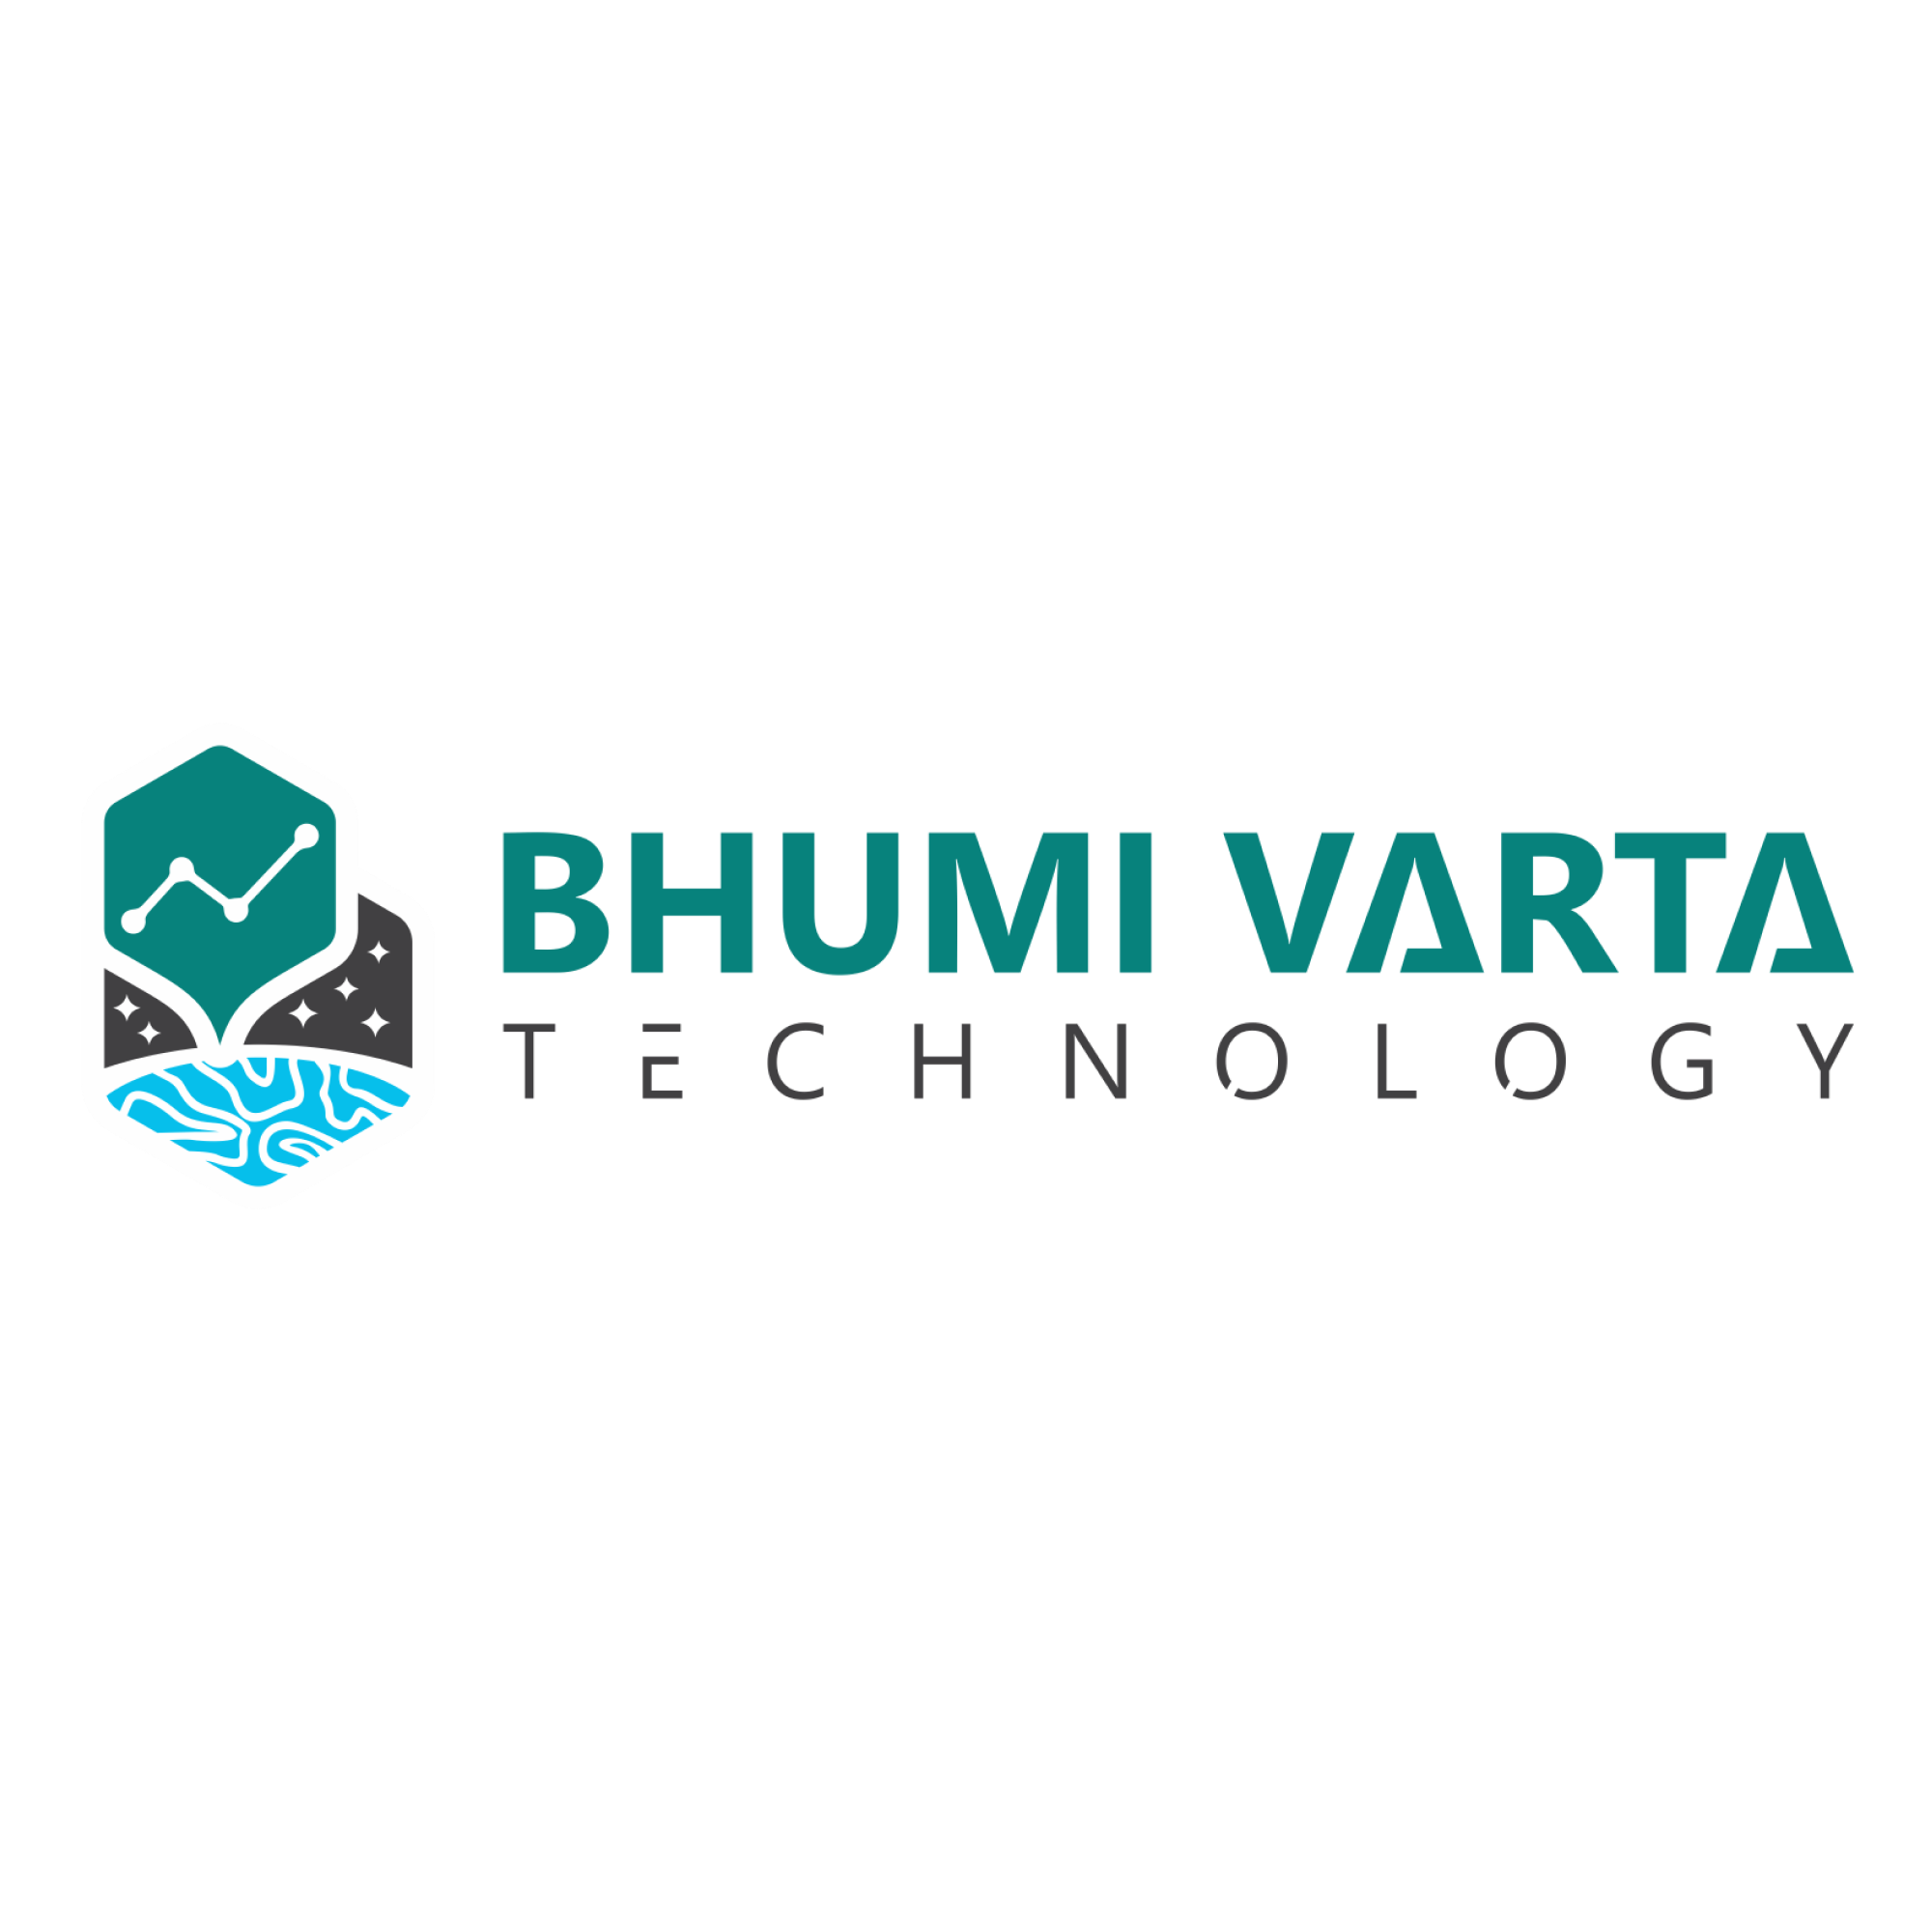 Bhumi Varta Technology